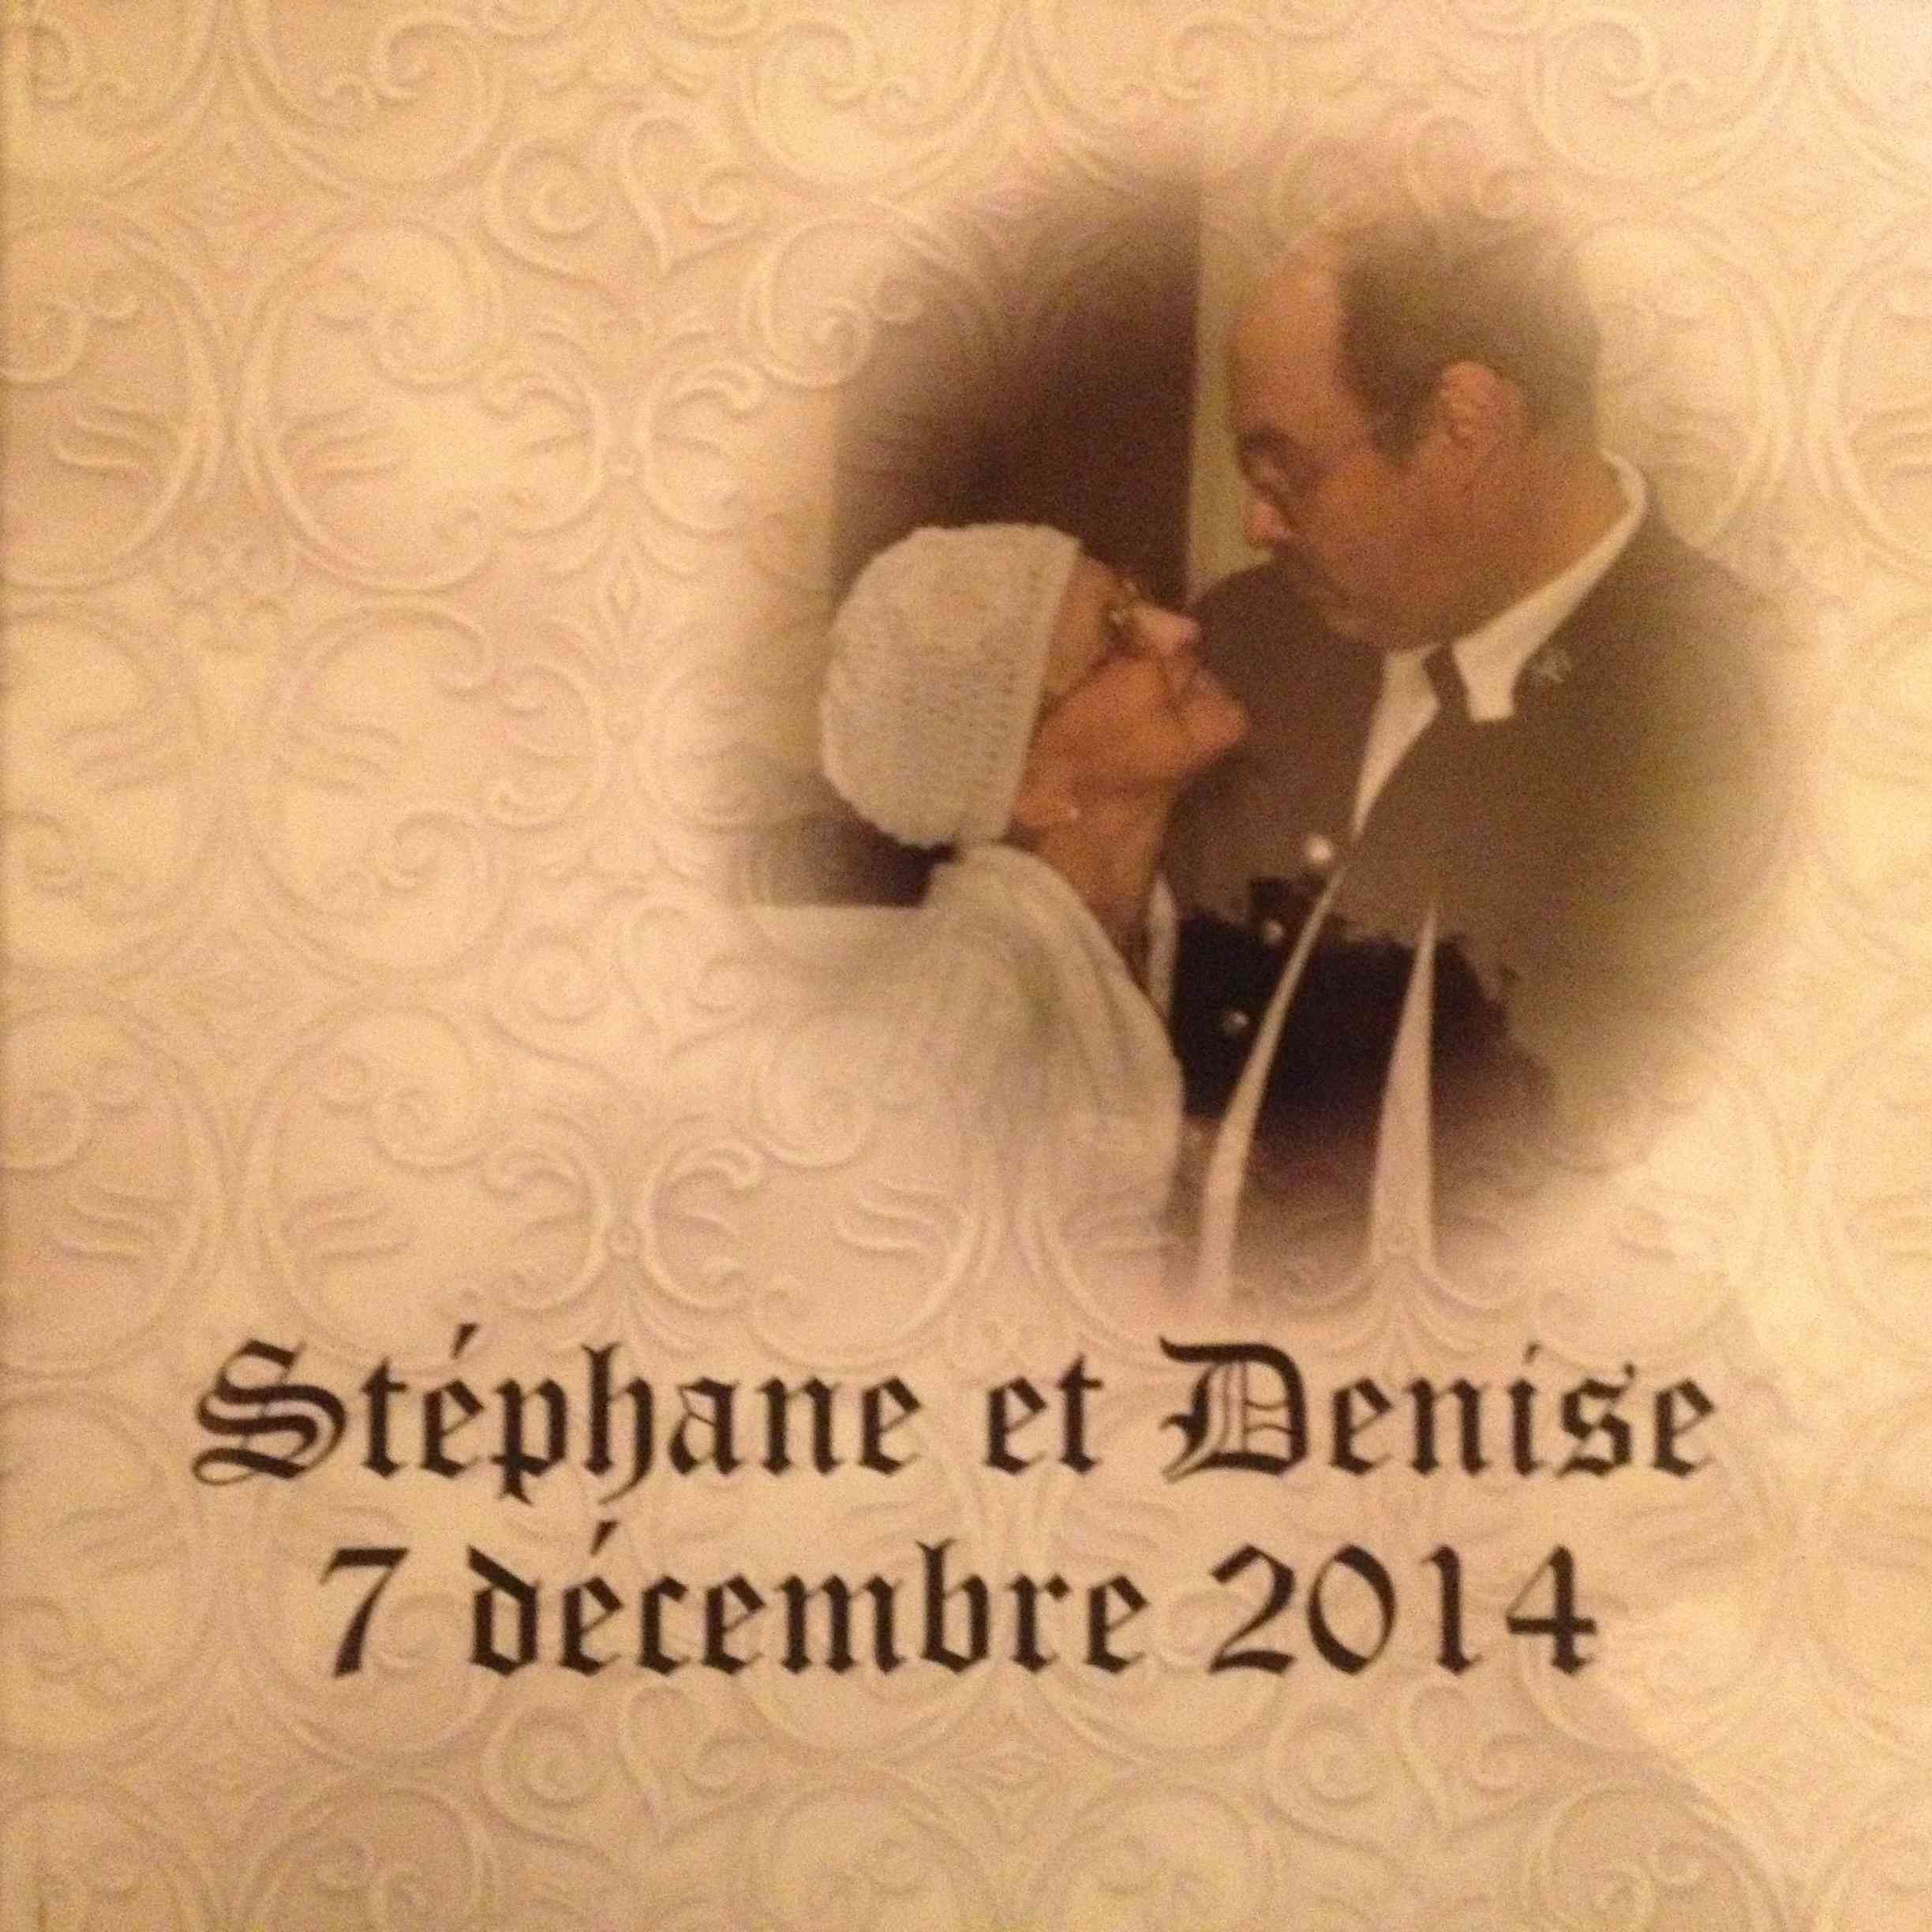 Souvenir du mariage de Stéphane et Denise 7 décembre 2014 - Souvenirs partagés par Denise Couver10